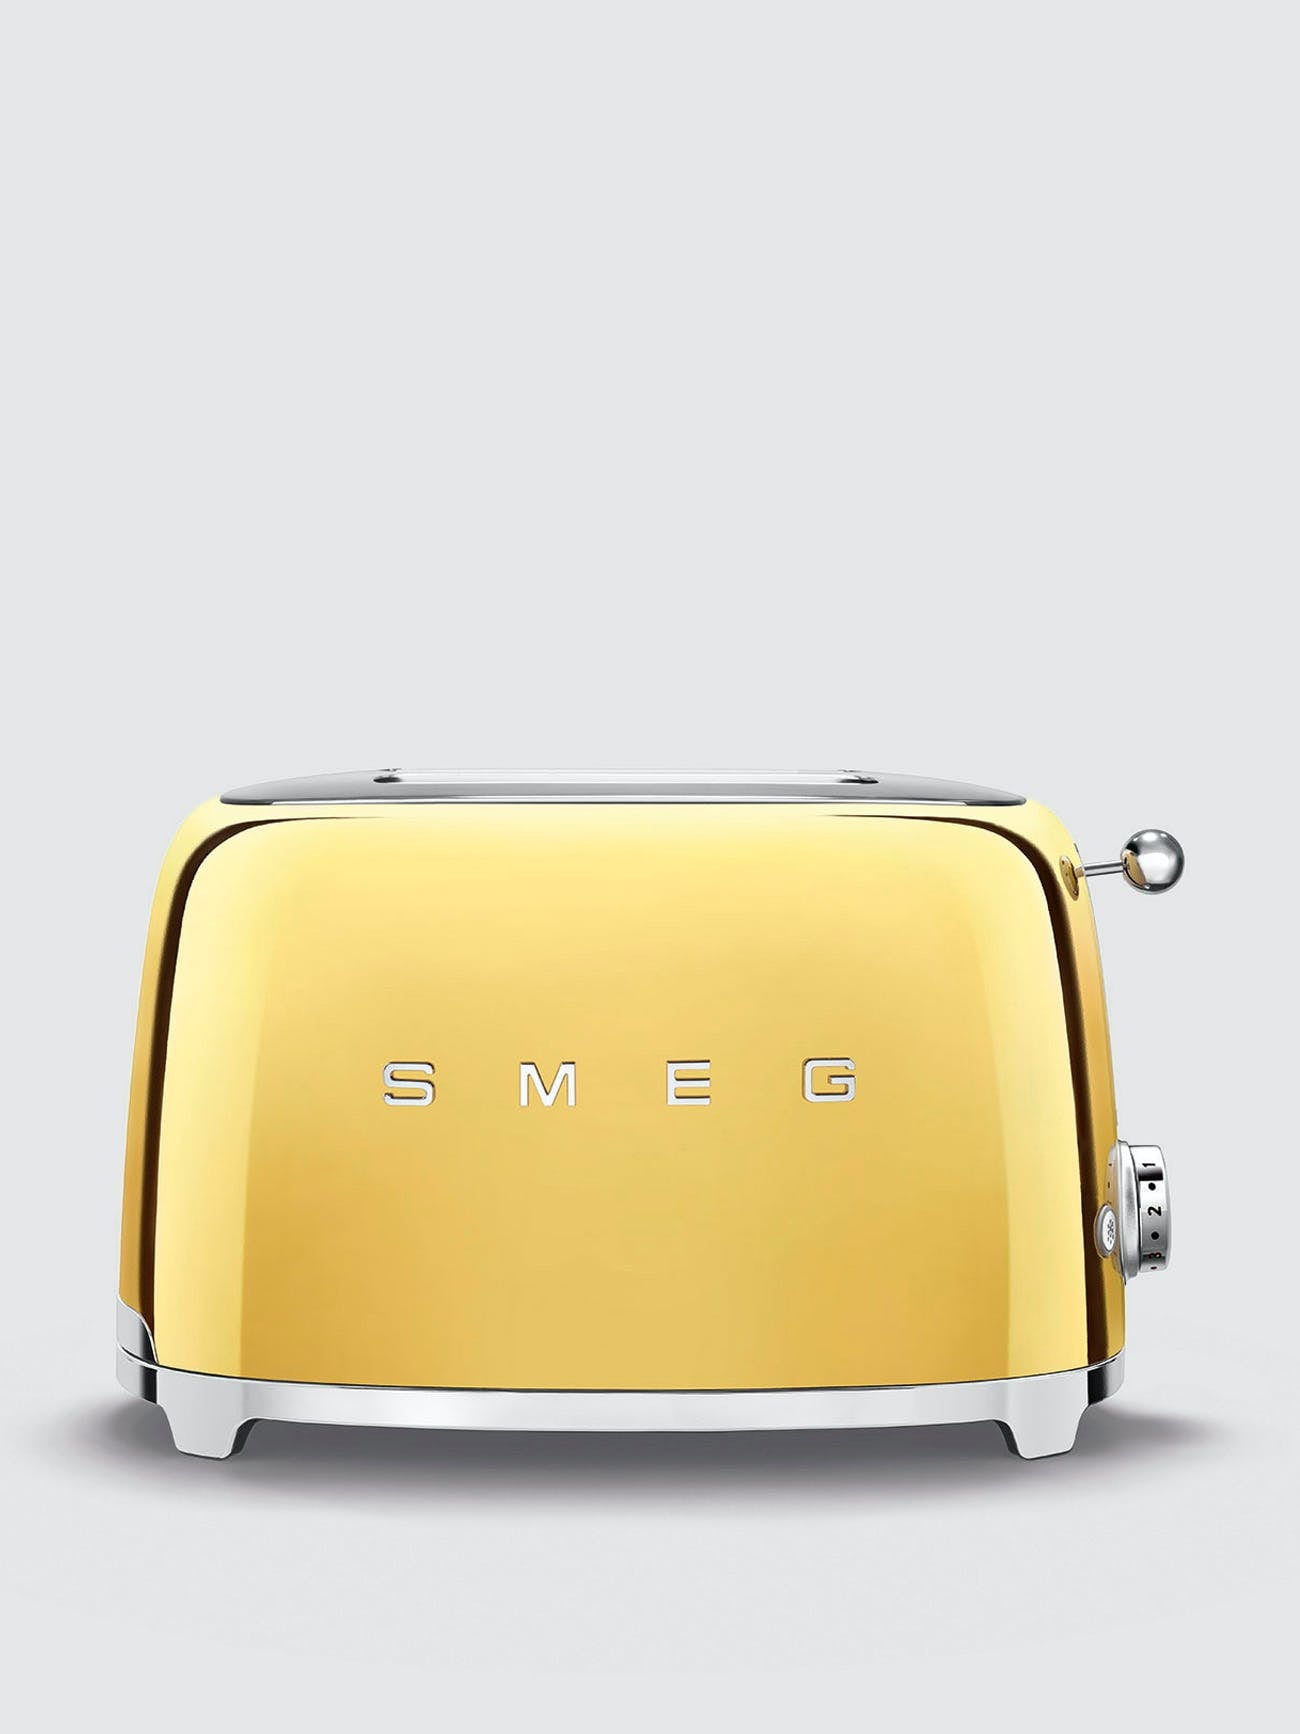 Set of kitchen appliances SMEG 01 | 3D model